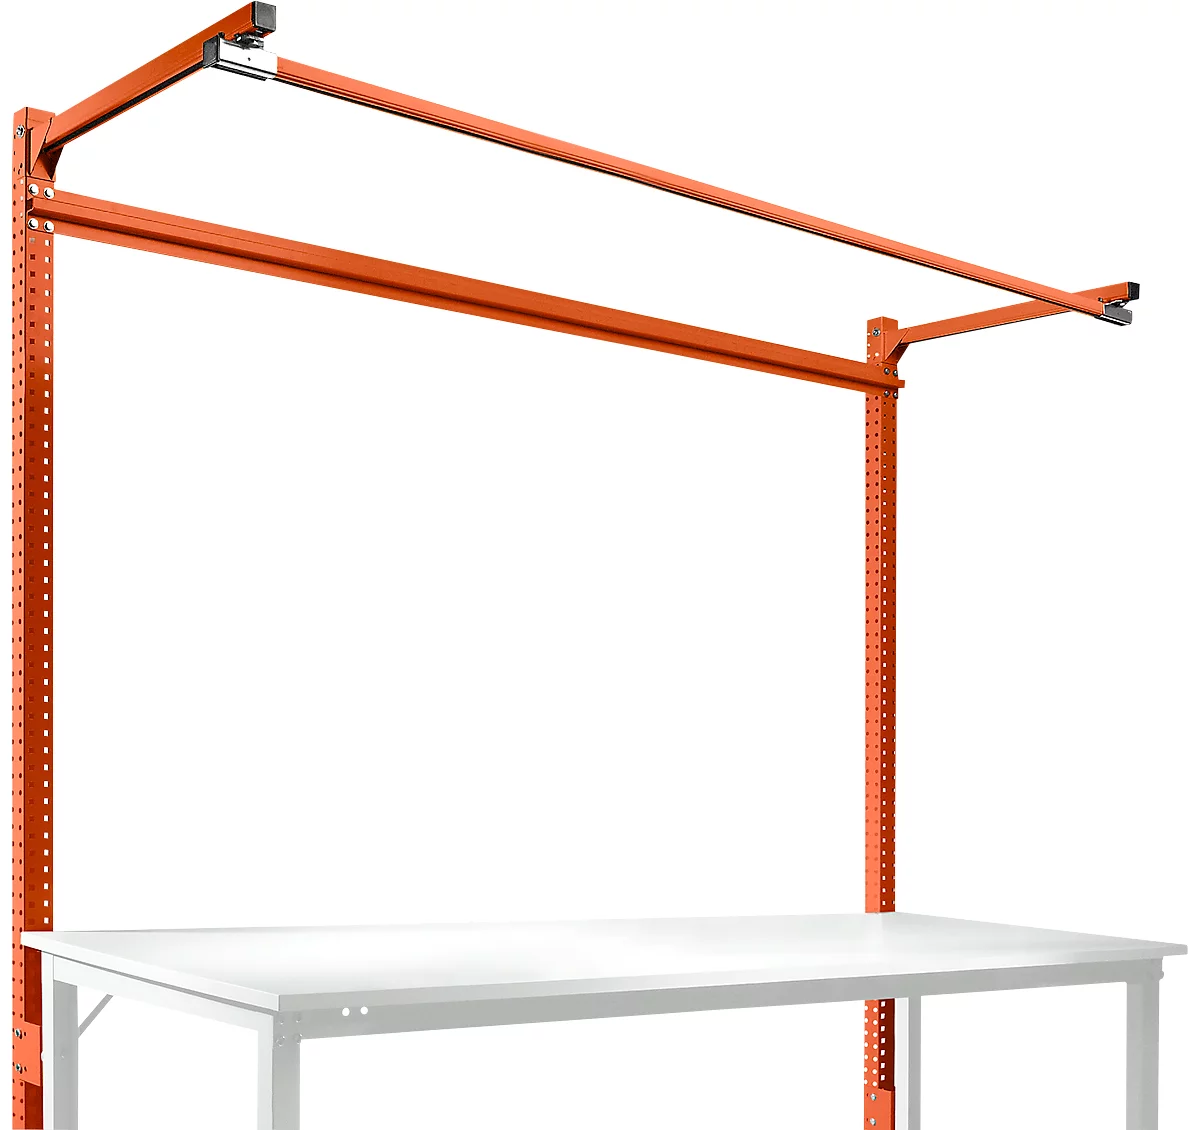 Estructura pórtica adicional con brazo saliente, Mesa básica STANDARD mesa de trabajo/banco de trabajo UNIVERSAL/PROFI, 2000 mm, rojo anaranjado